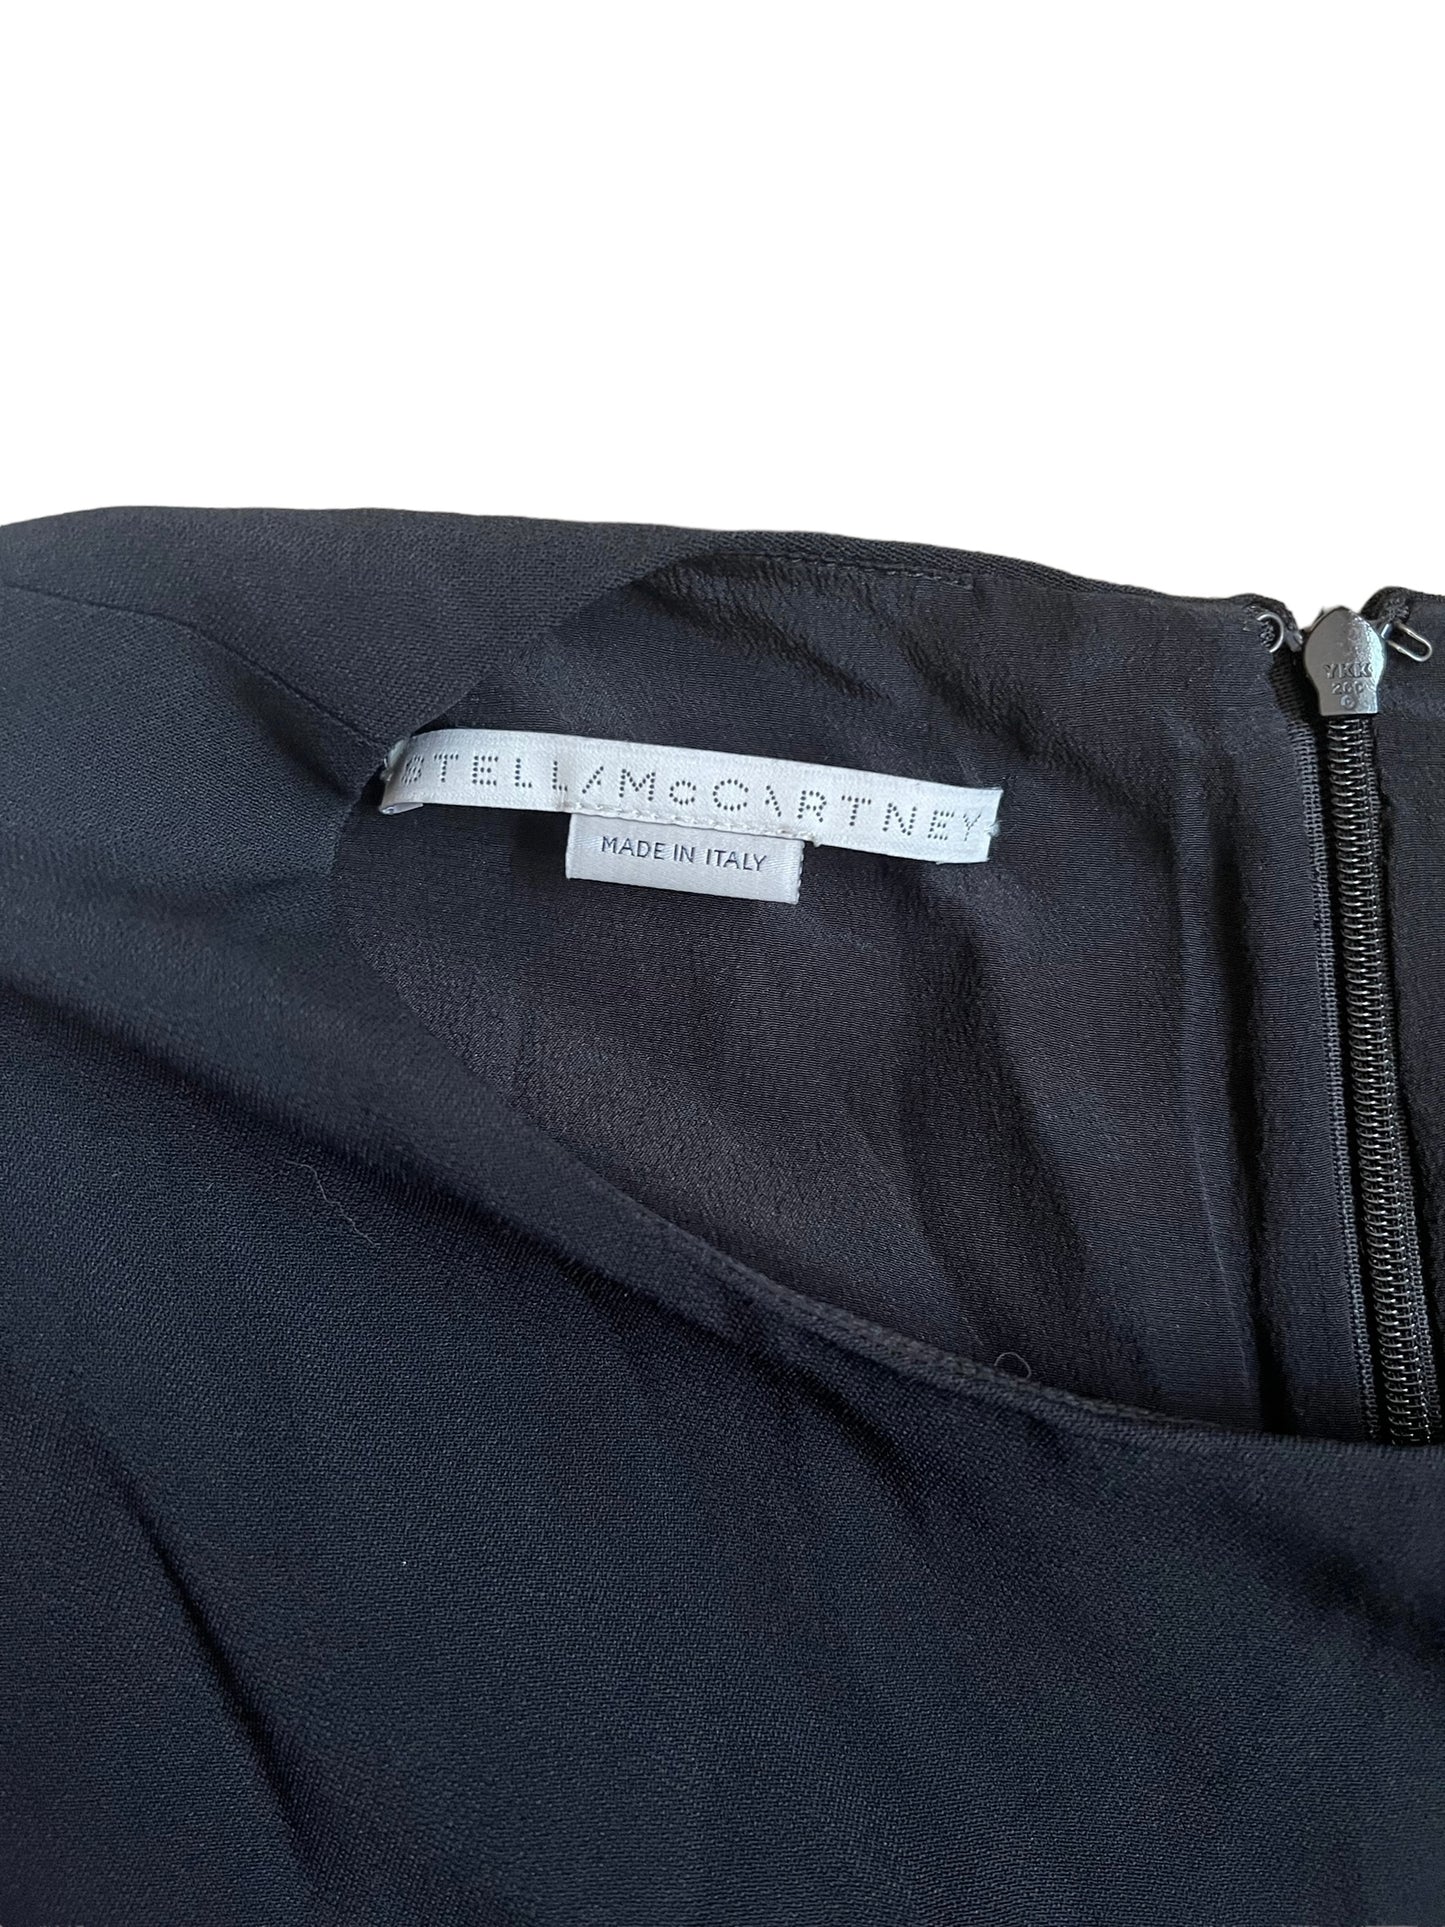 Stella McCartney Black Sequin Embellished Volcano Size 44 Shift Dress